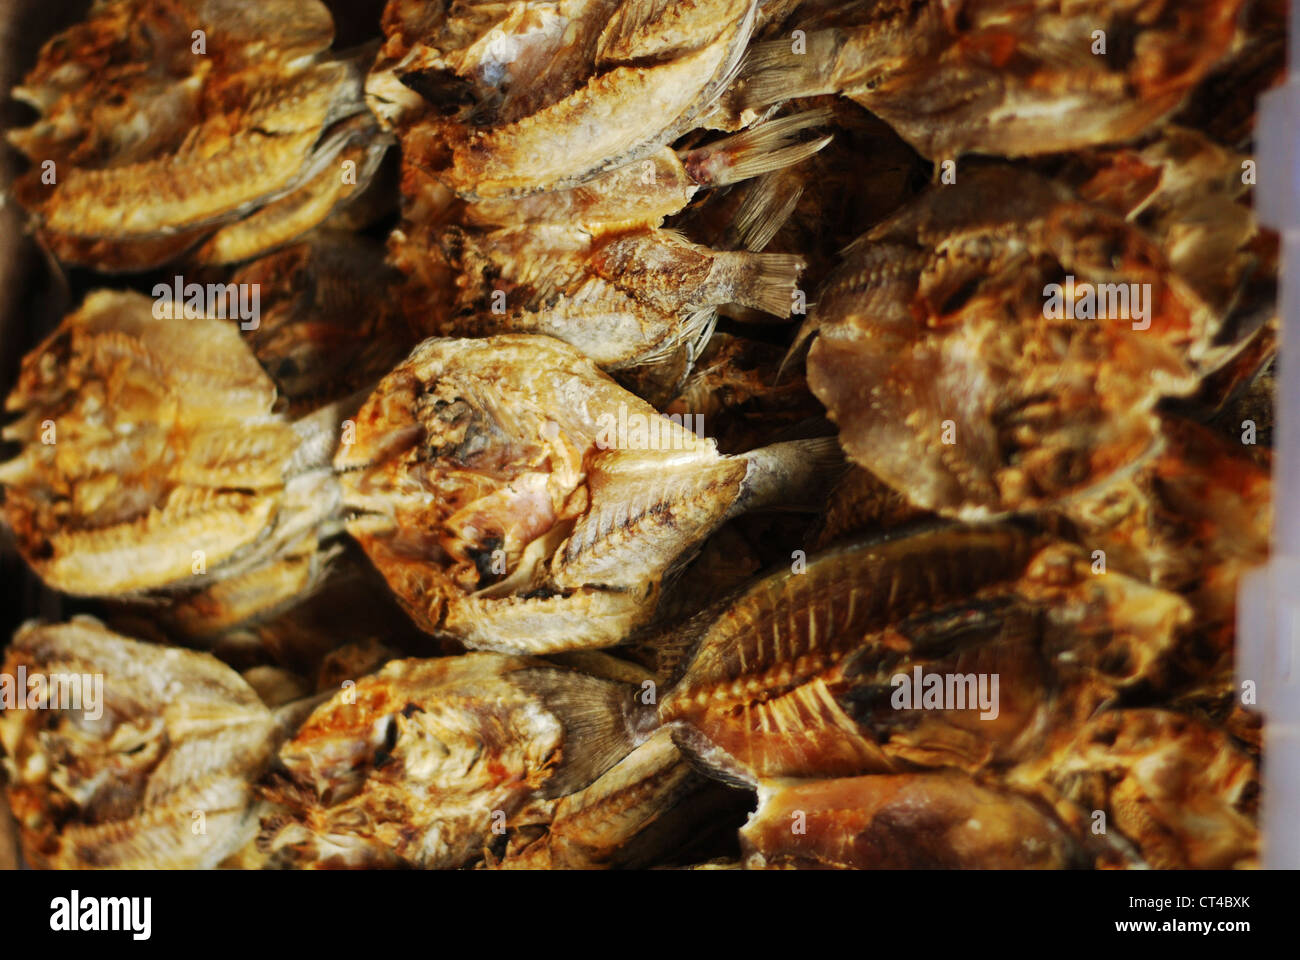 Malaysia, Borneo, Semporna, dried fish Stock Photo